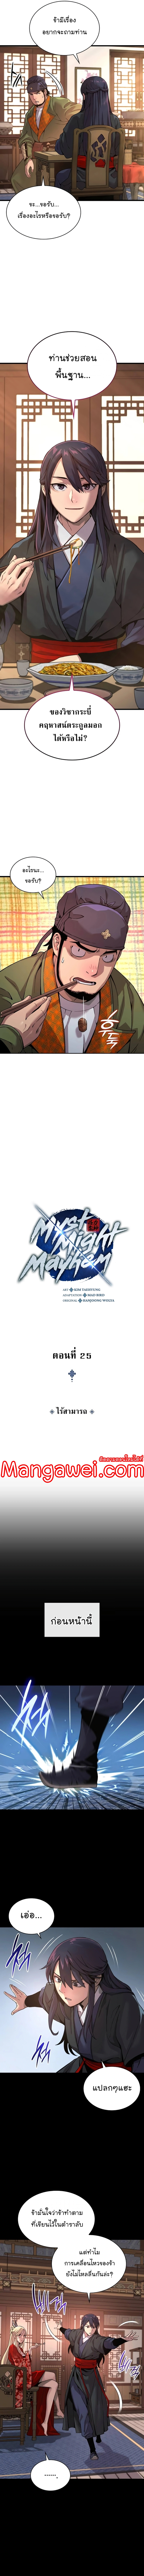 Myst, Might, Mayhem 25 (3)